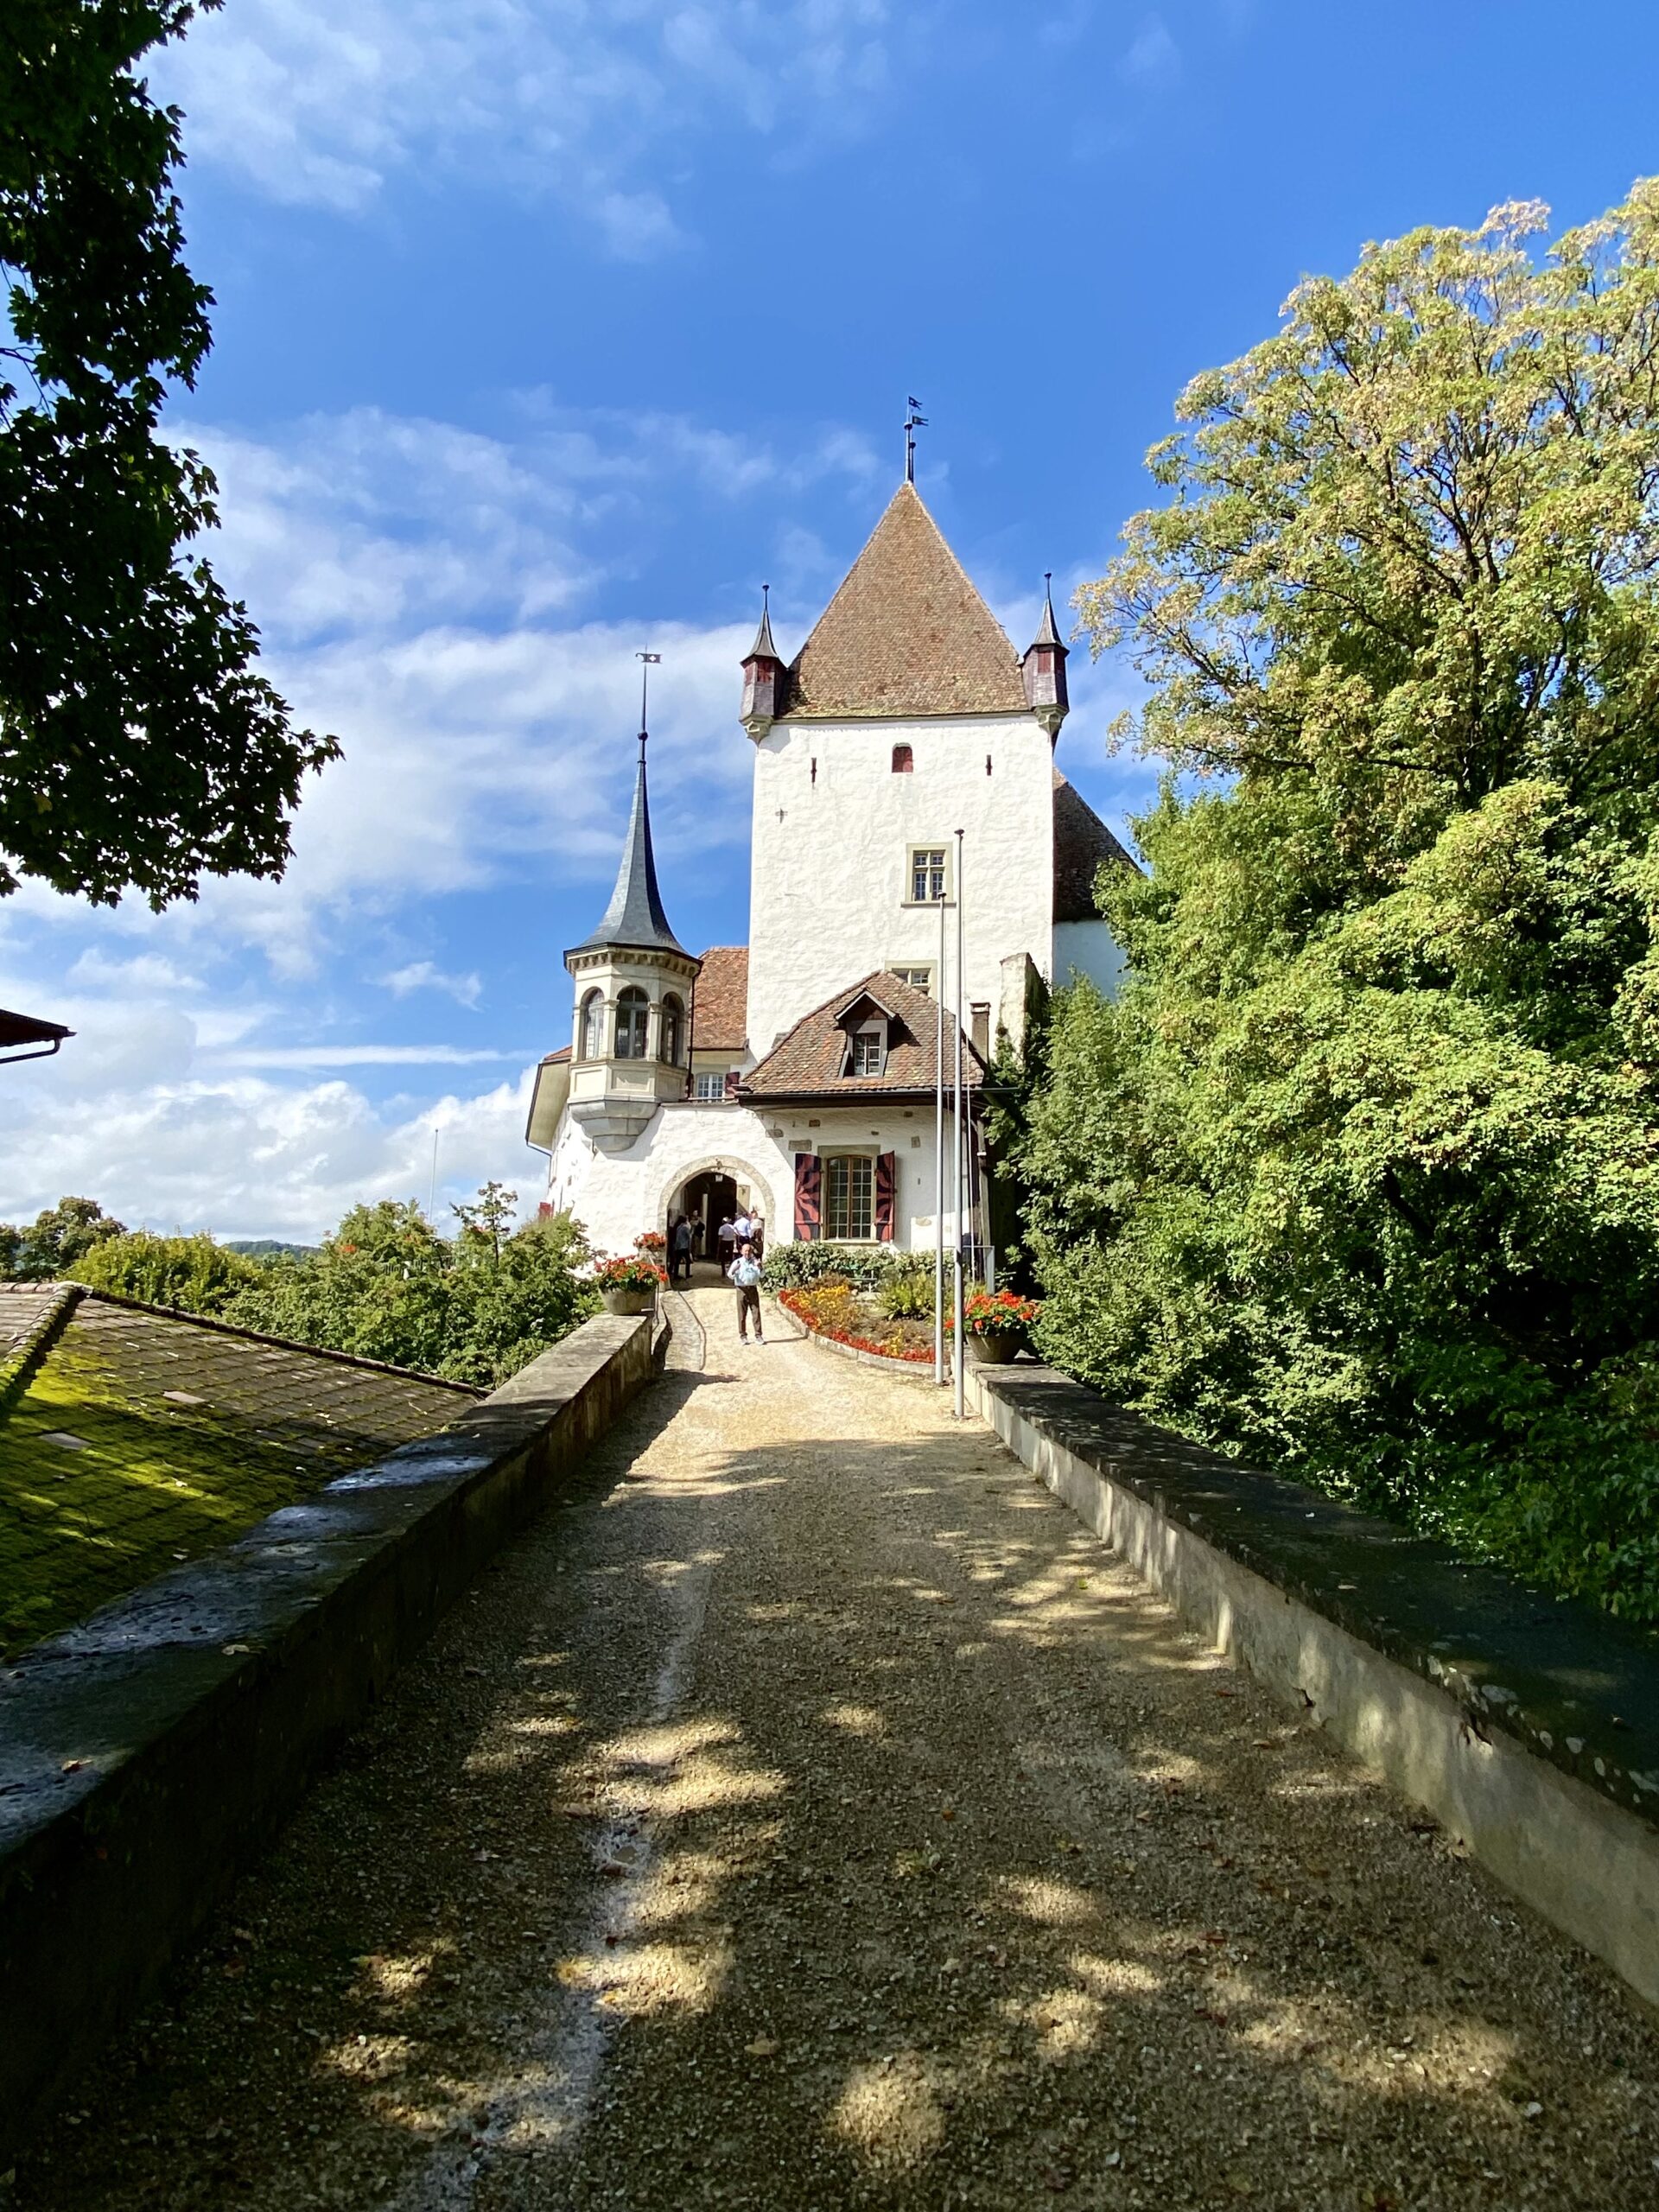 Worb Castle, Switzerland